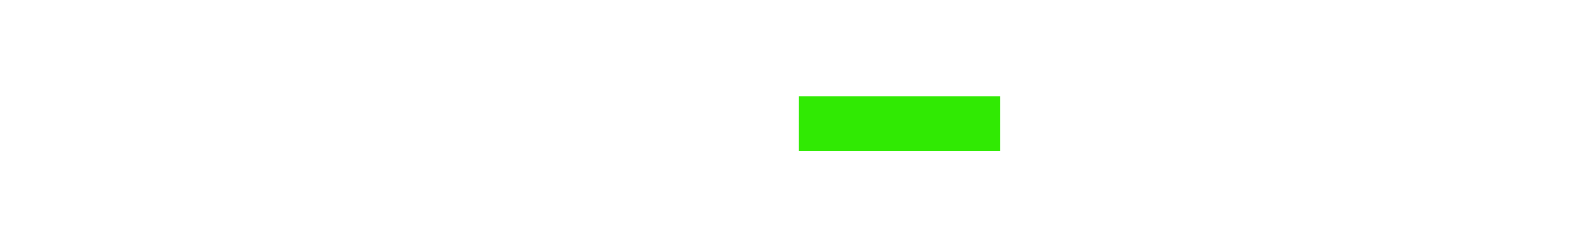 Haleon Logo groß für dunkle Hintergründe (transparentes PNG)